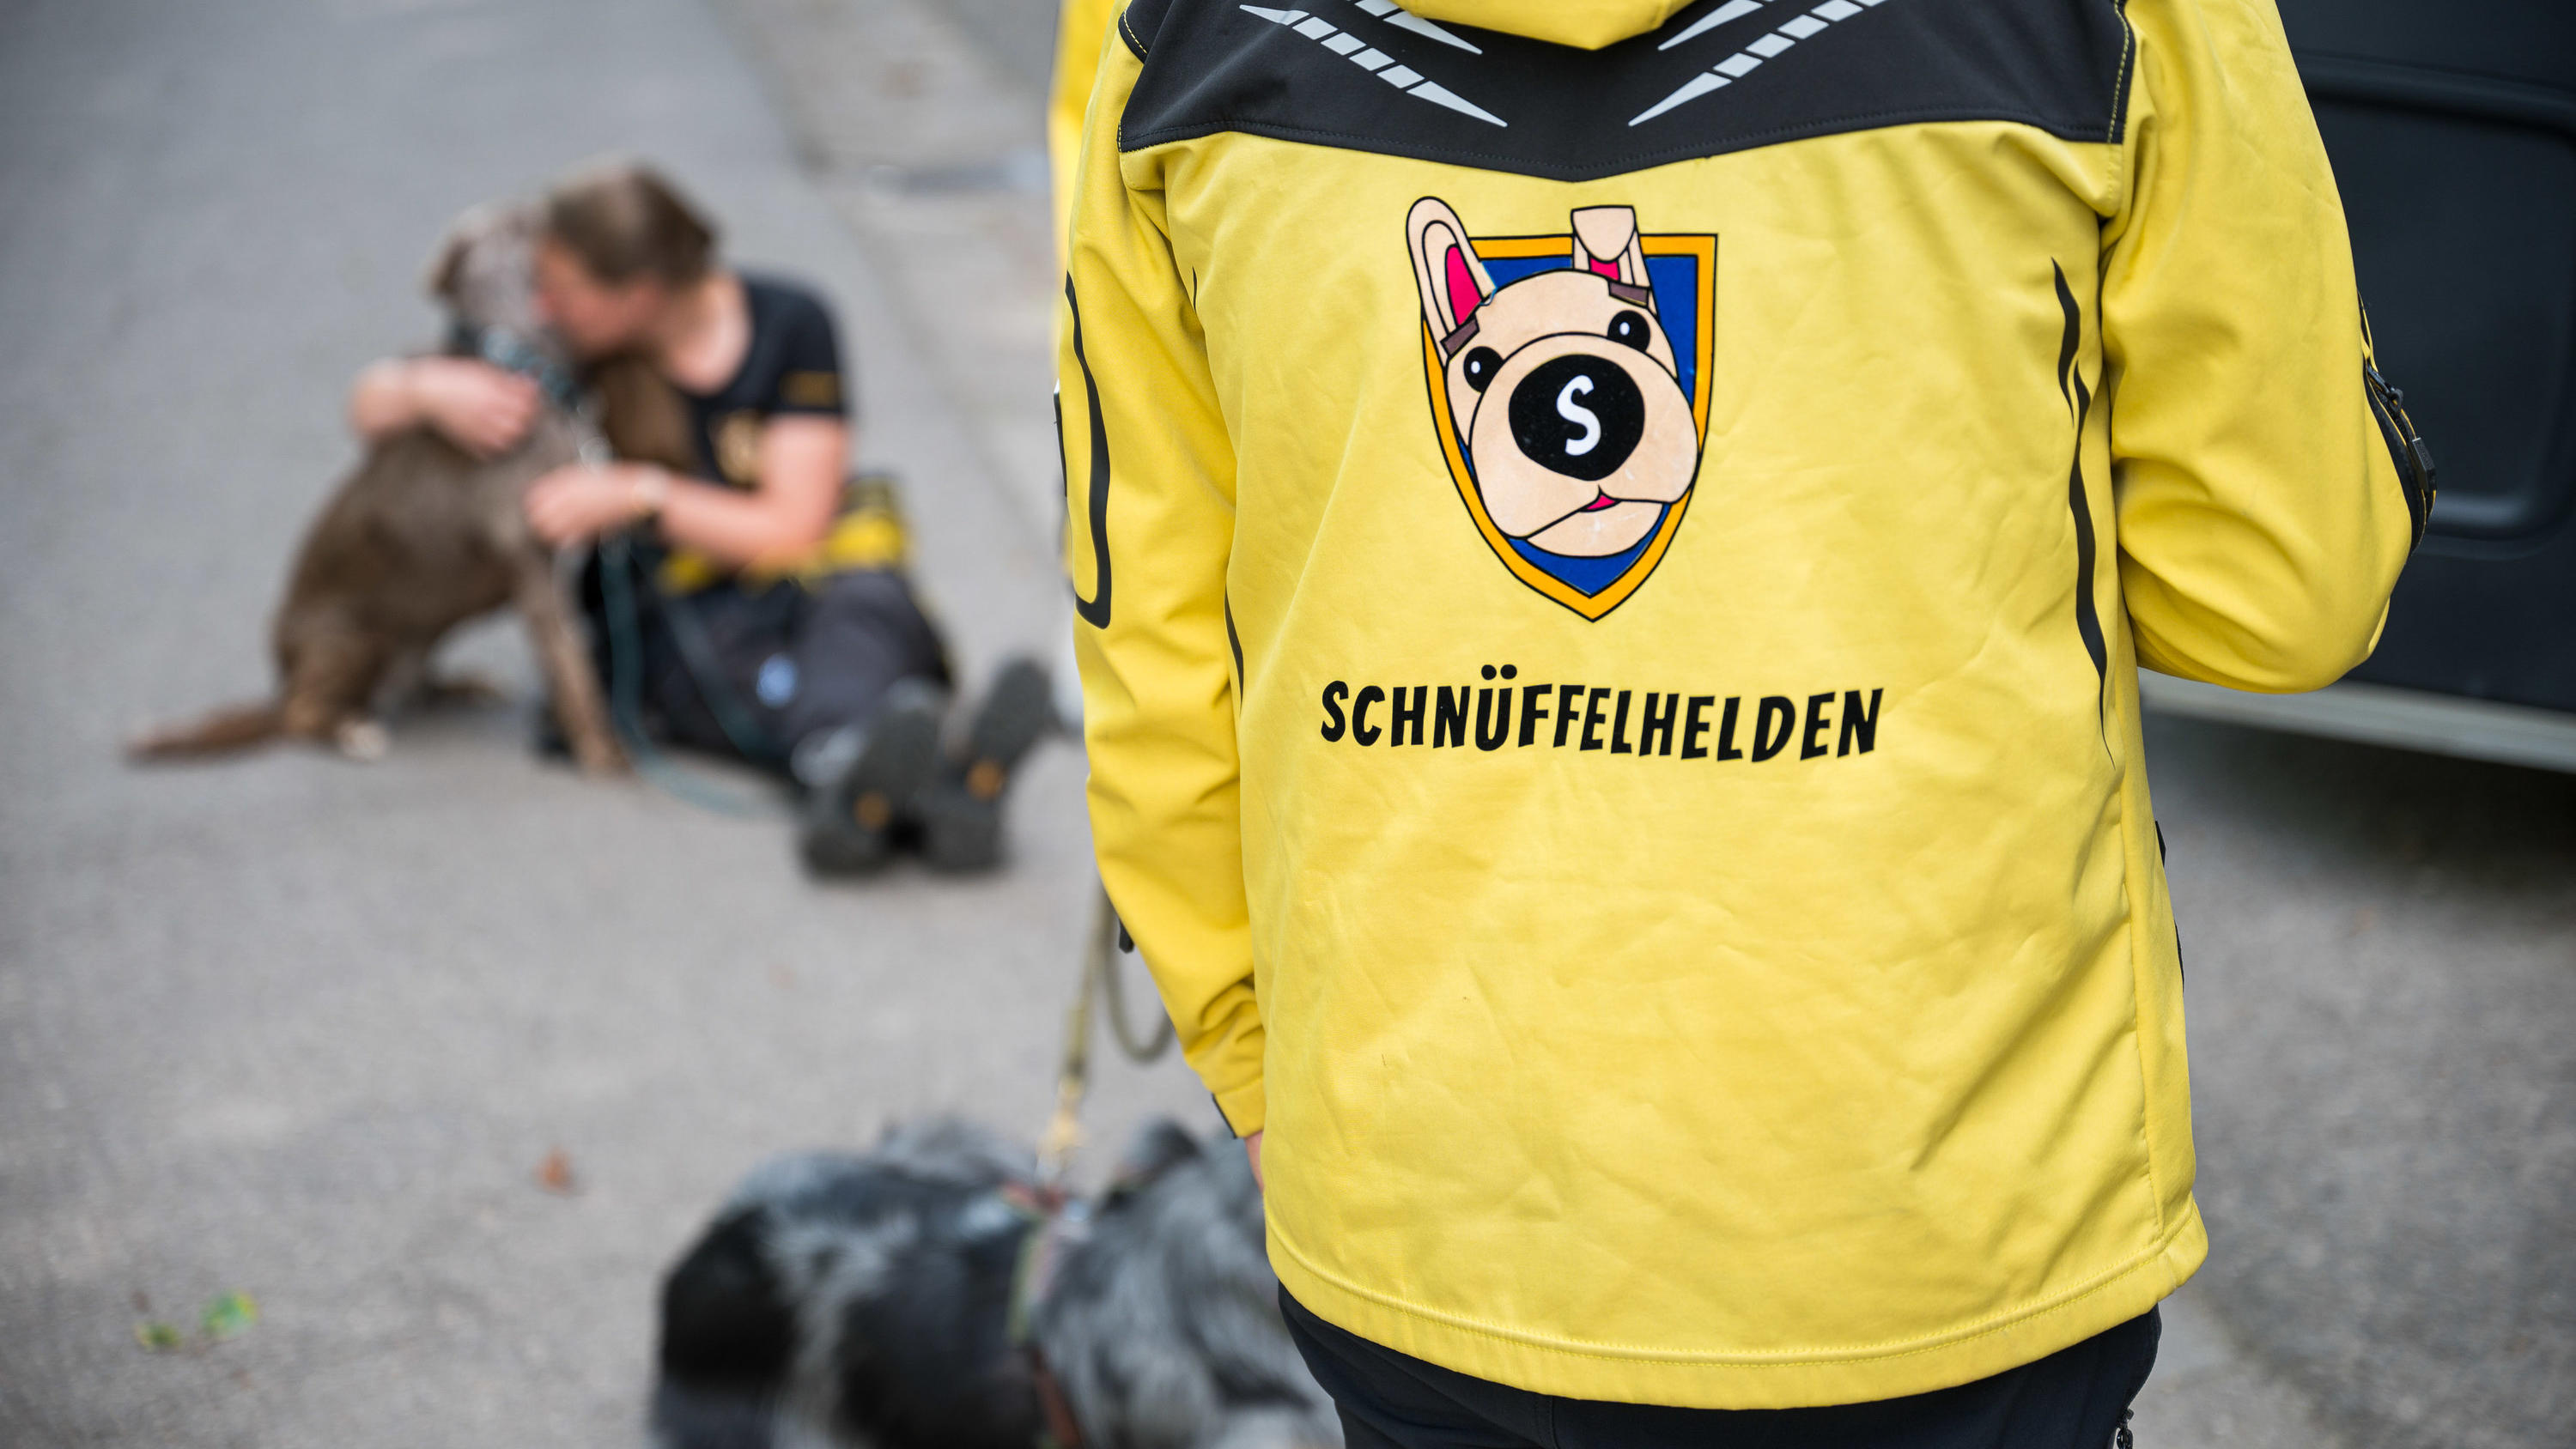 16.08.2021, Saarland, Püttlingen: Das Logo des Vereins "Schnüffelhelden" ist auf einer Jacke zu sehen. Der Verein hilft beim Auffinden von entlaufenen Hunden. (Zu dpa "«Schnüffelhelden» im Einsatz für vermisste Hunde") Foto: Oliver Dietze/dpa +++ dpa